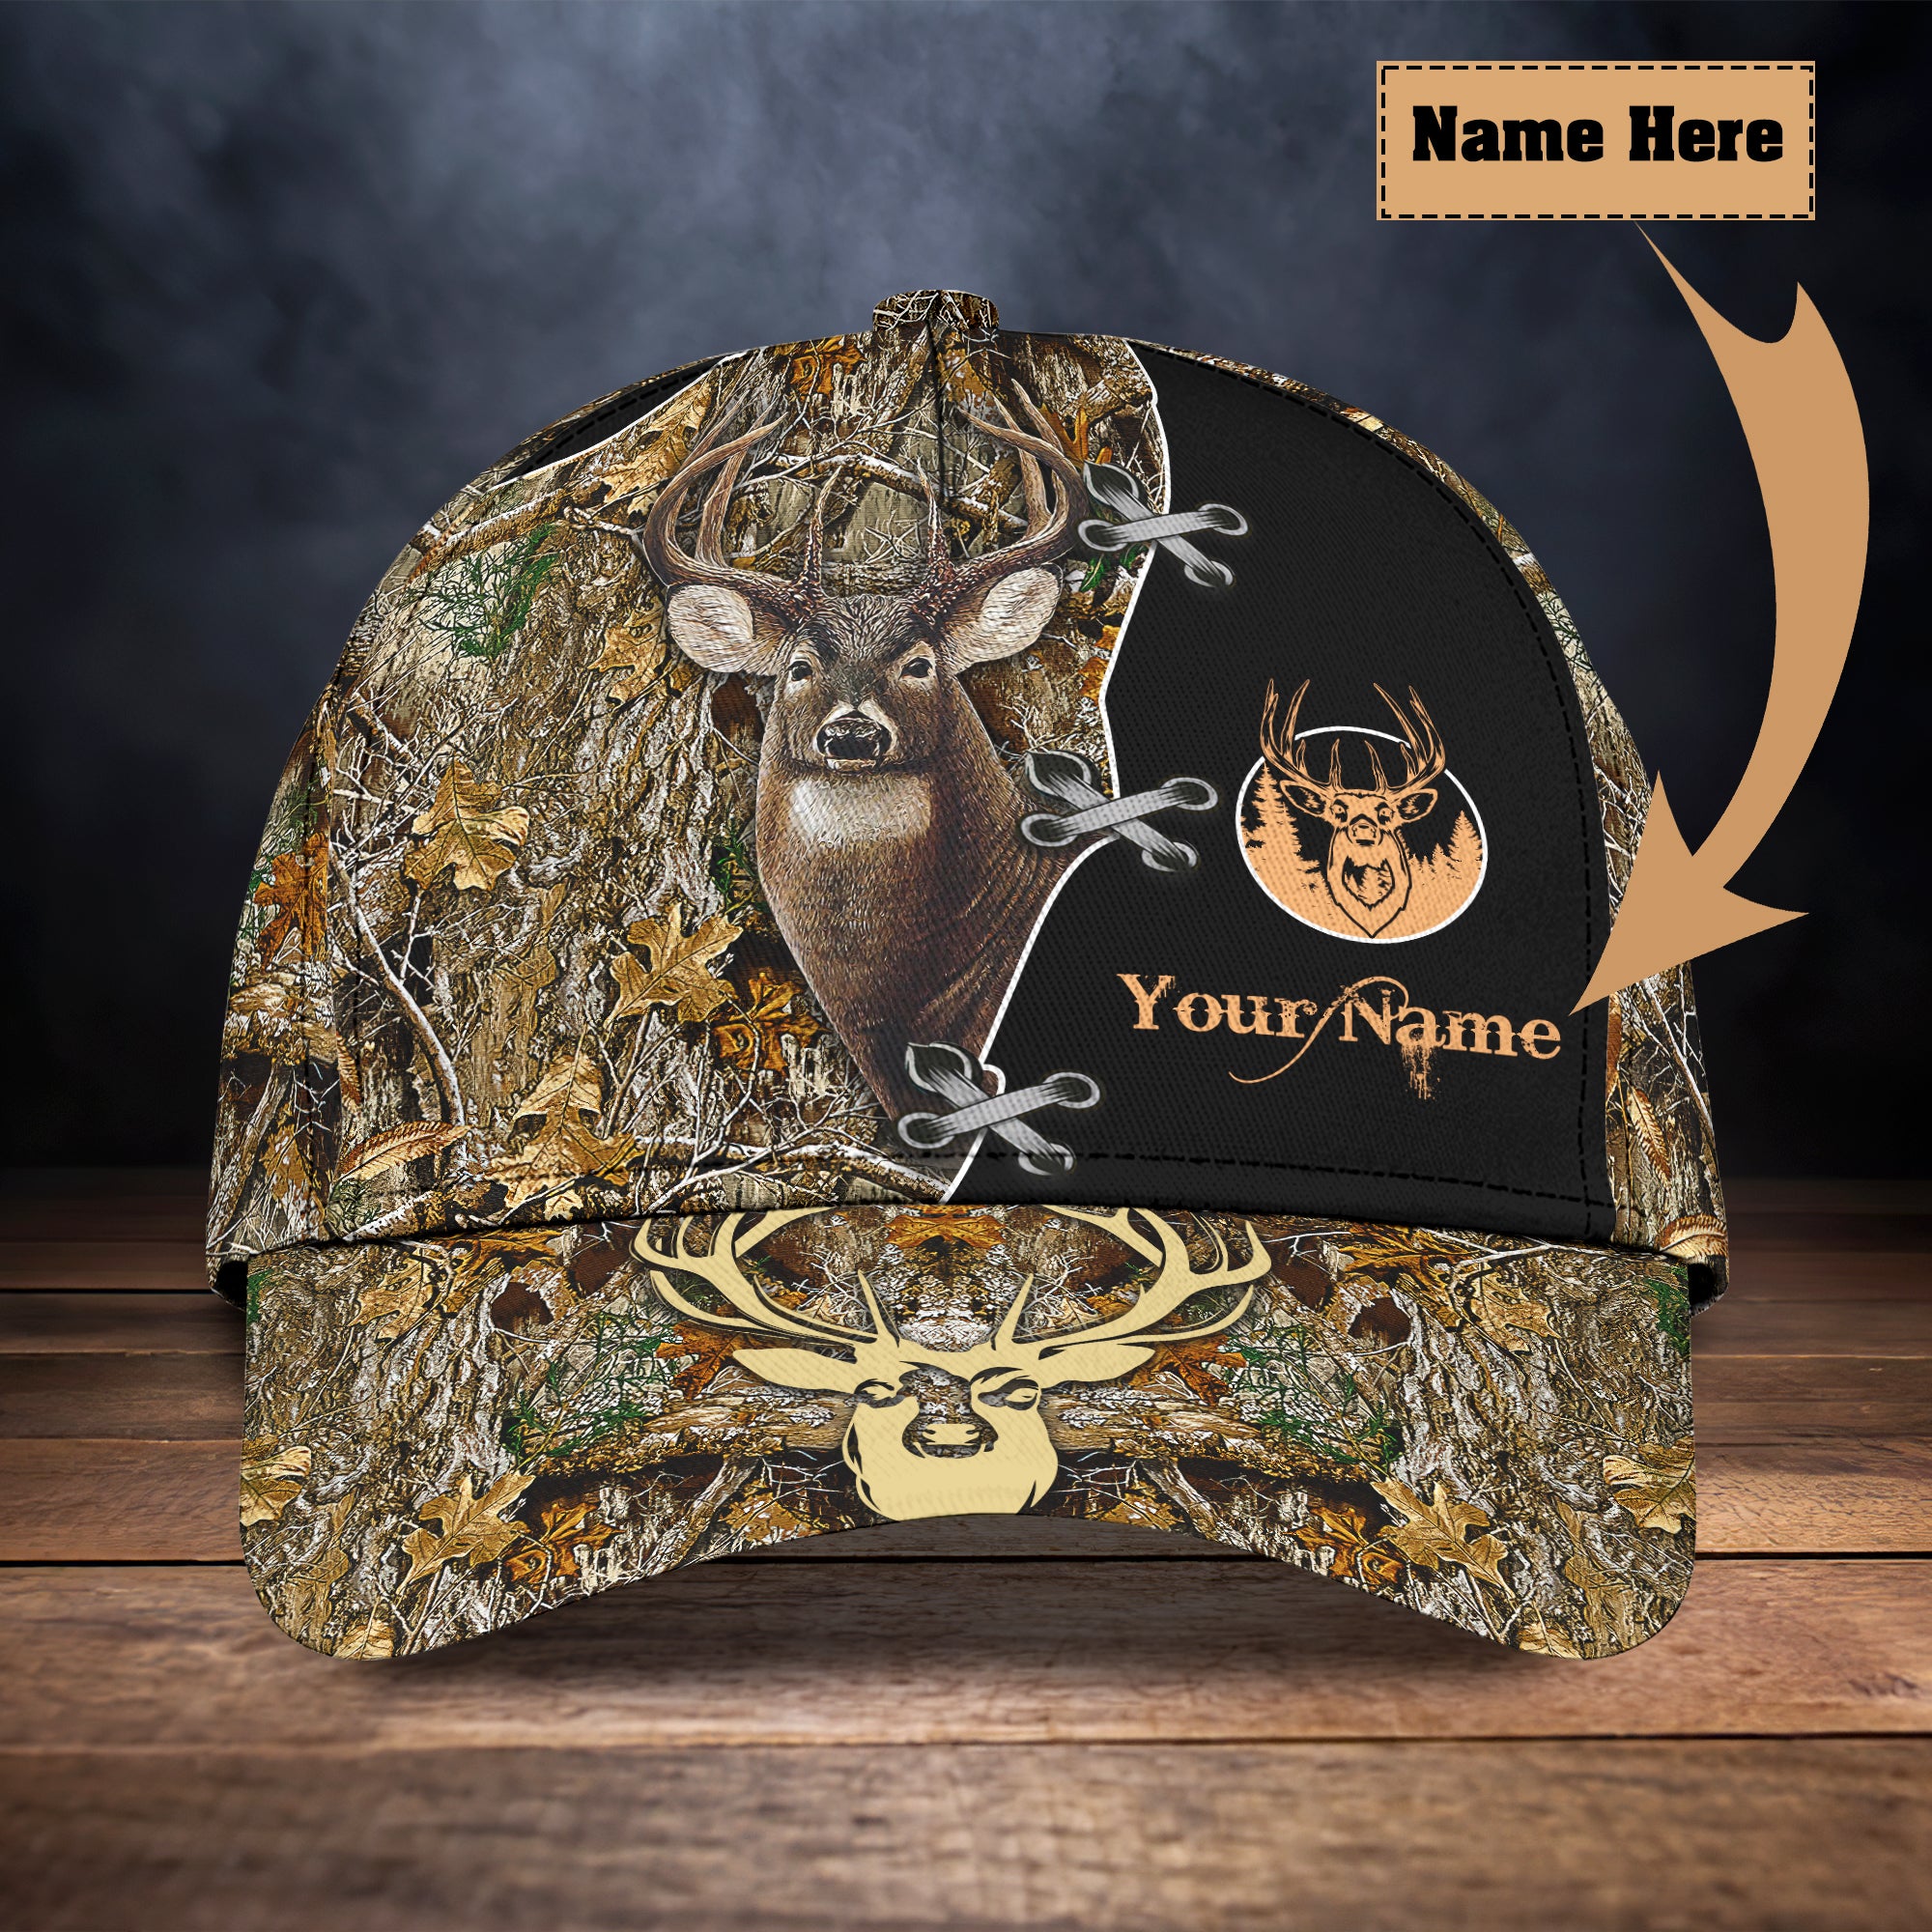 Deer Hunting - Personalized Name Cap - Boom